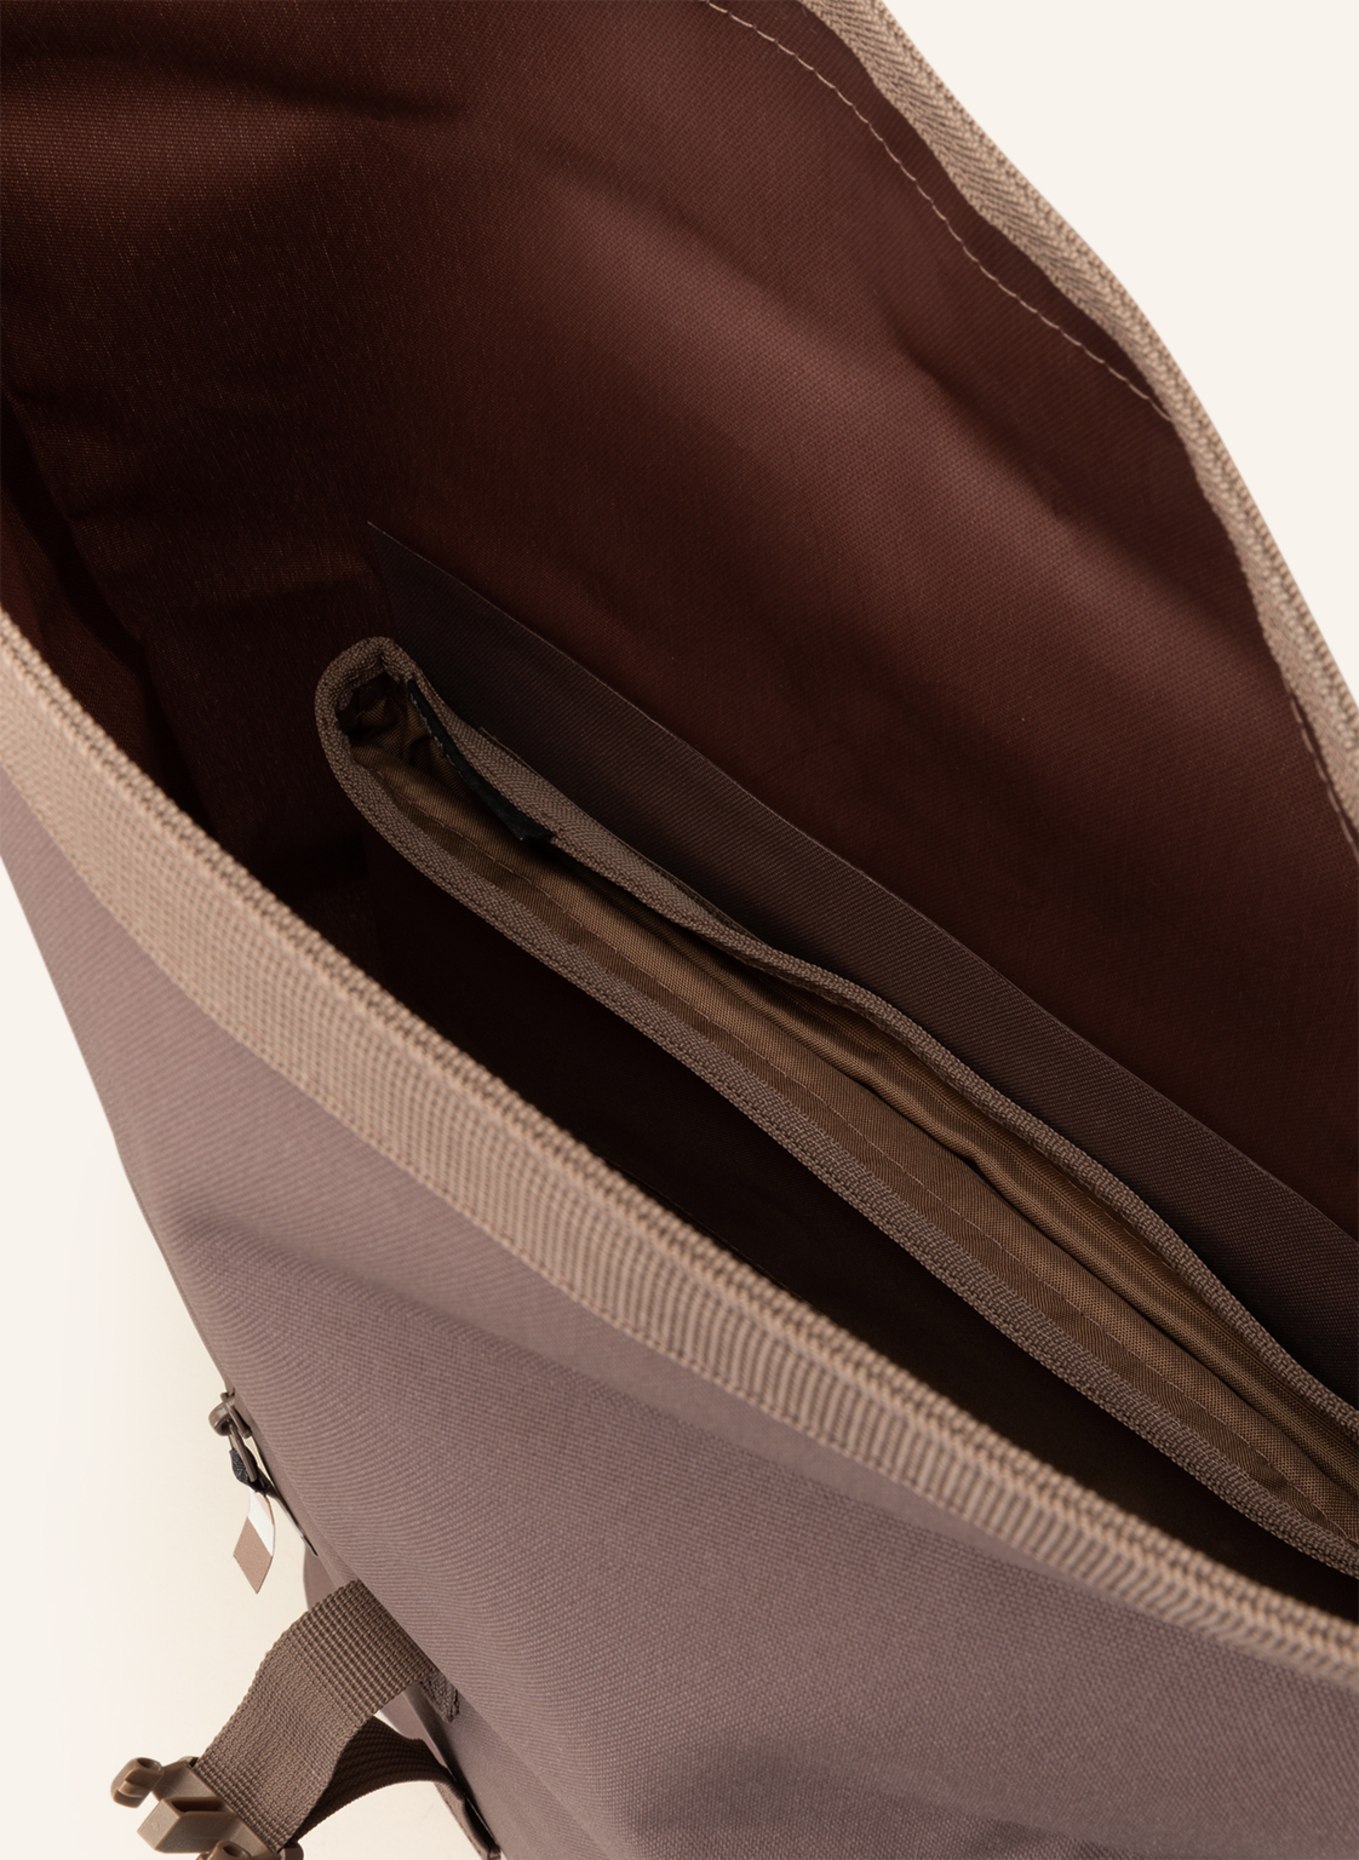 GOT BAG Backpack ROLLTOP, Color: BROWN (Image 3)